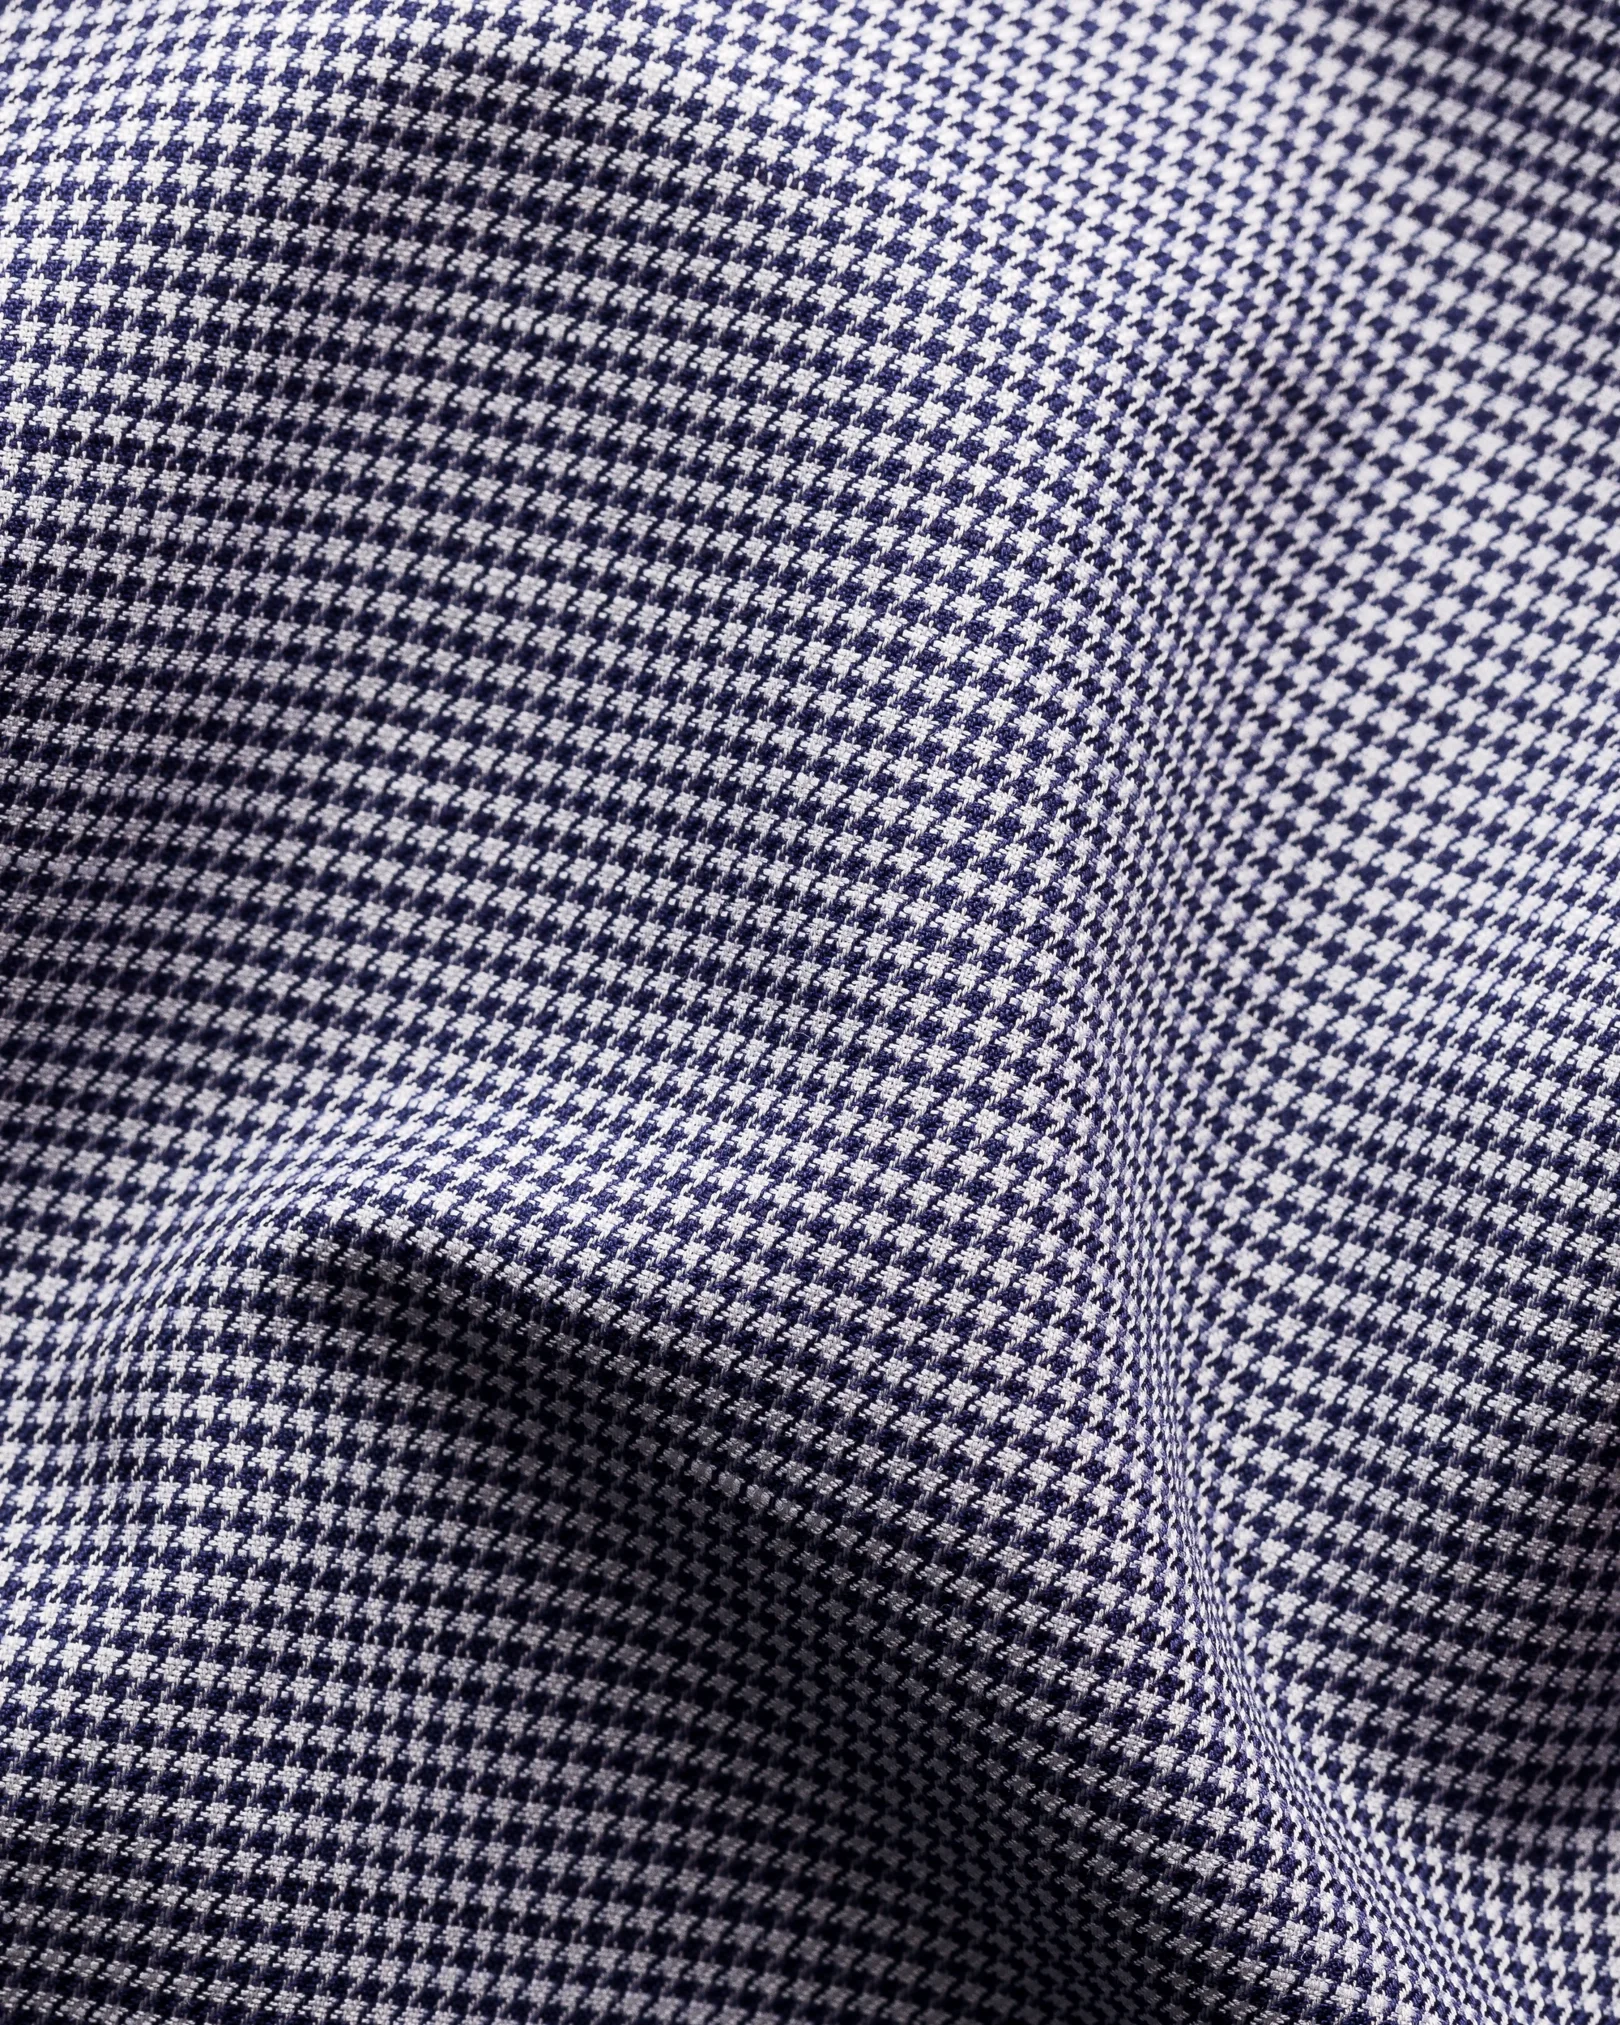 Eton - navy blue wrinkle free cotton linen